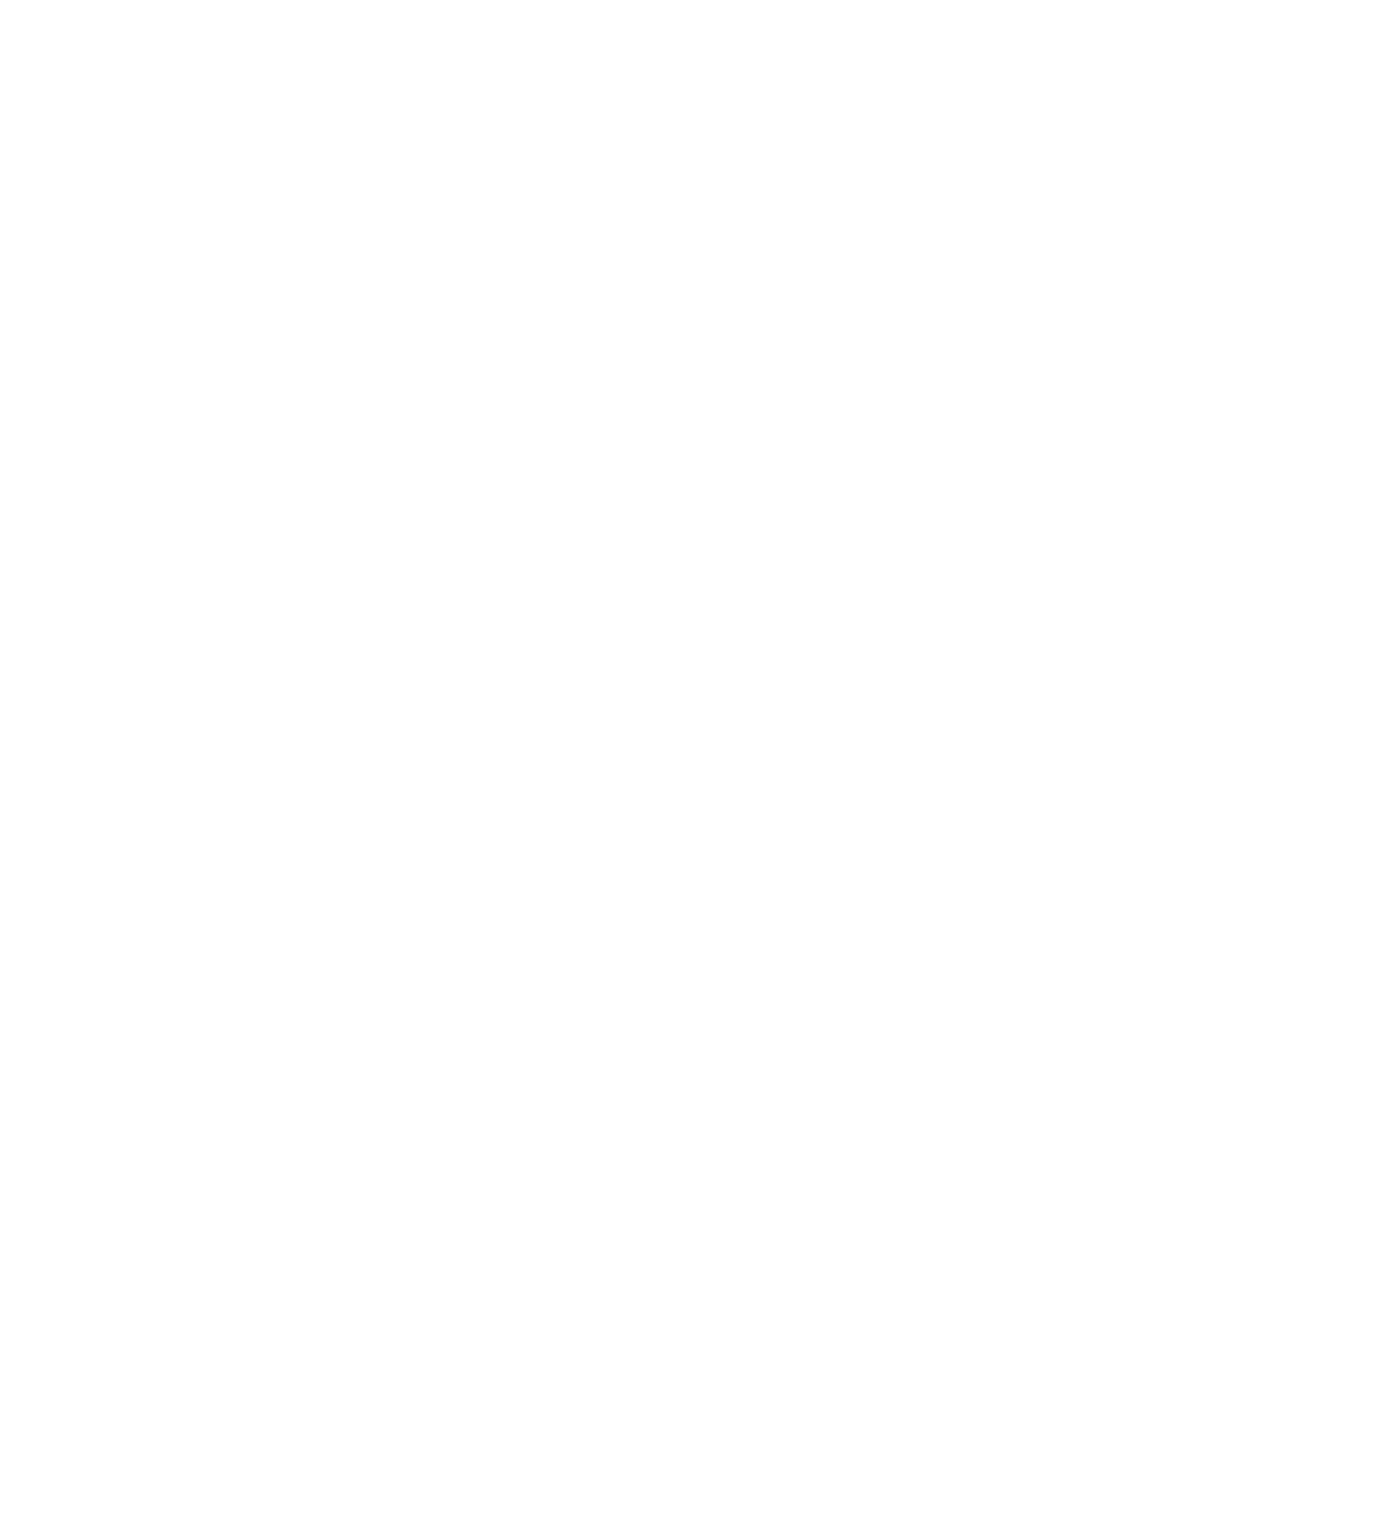 Montauk Renewables logo for dark backgrounds (transparent PNG)